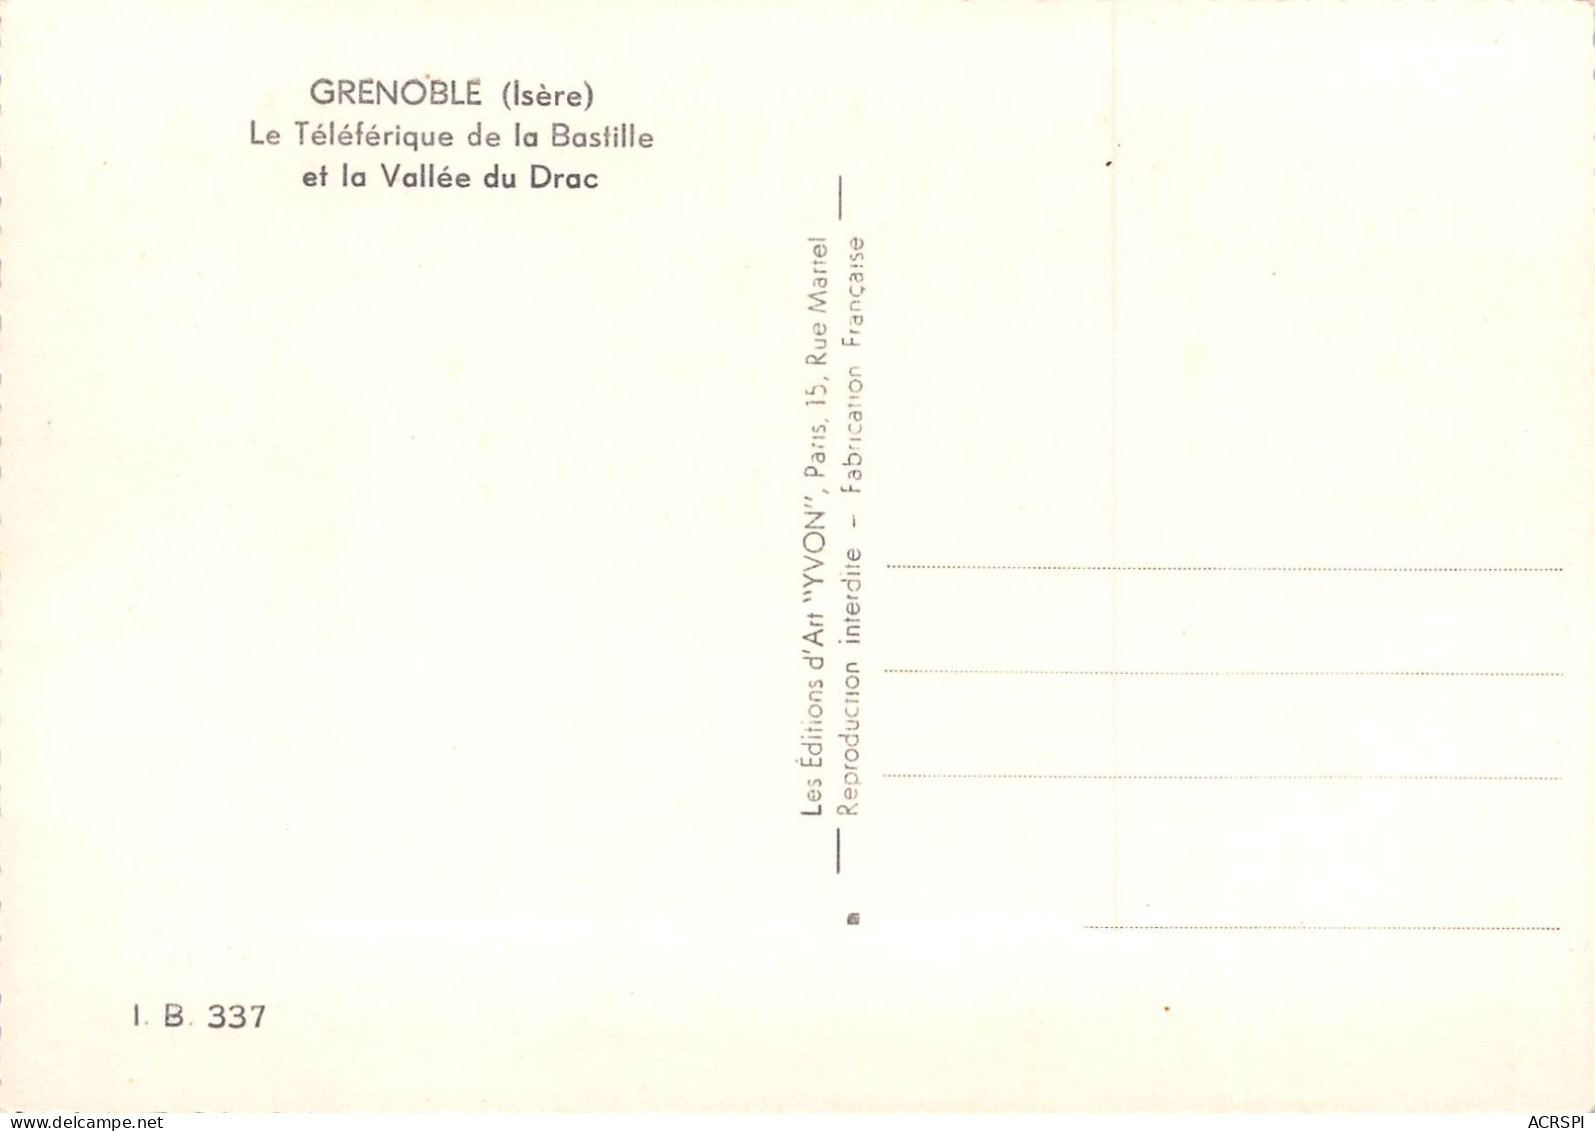 lot de 10 cartes de GRENOBLE téléphérique de la Bastille  téléférique (Scan R/V) N°   24   \NAD007